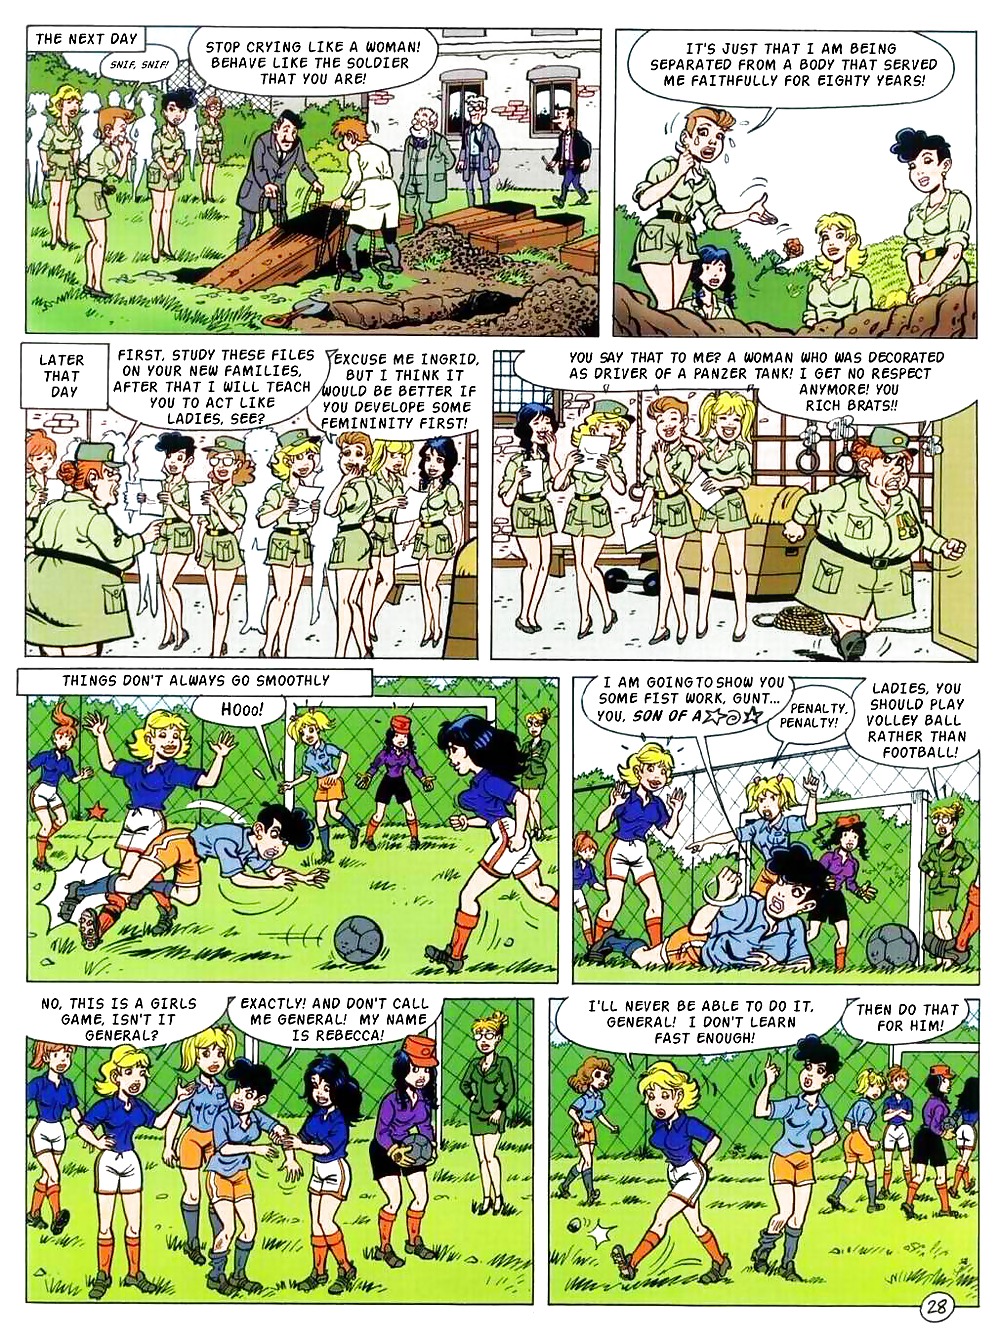 Certains Comics érotiques Pics Porno Qui Me Rendent Mélange Humide :)) #19423134